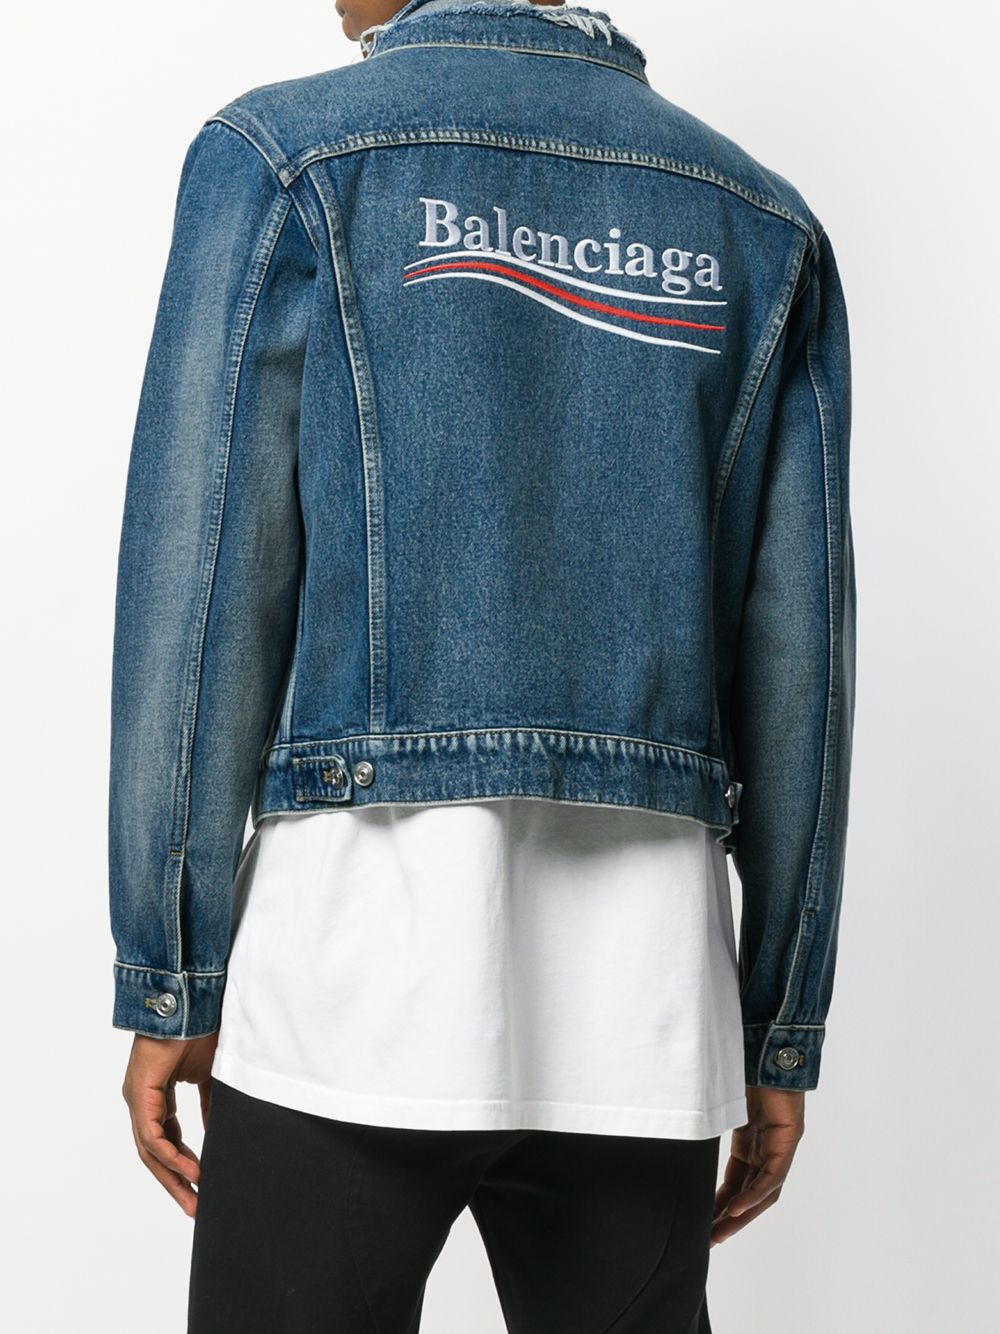 фото Balenciaga классическая джинсовая куртка